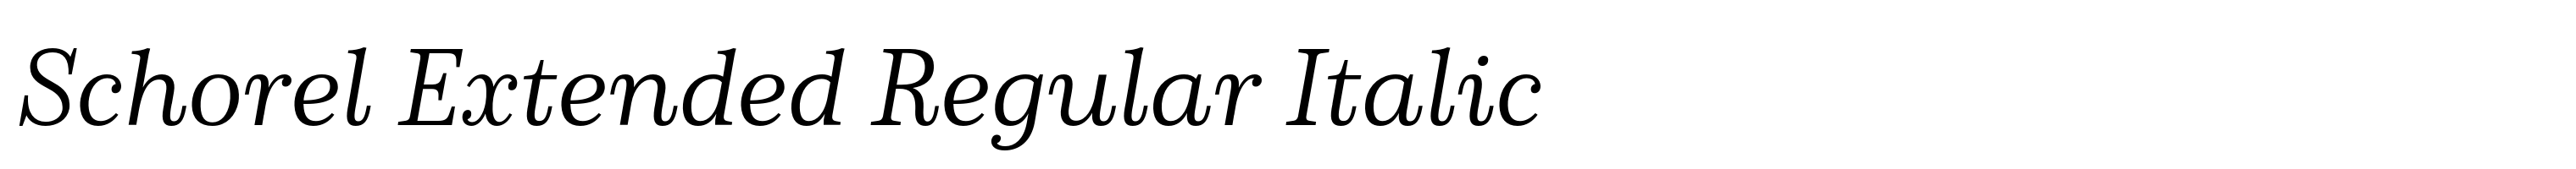 Schorel Extended Regular Italic